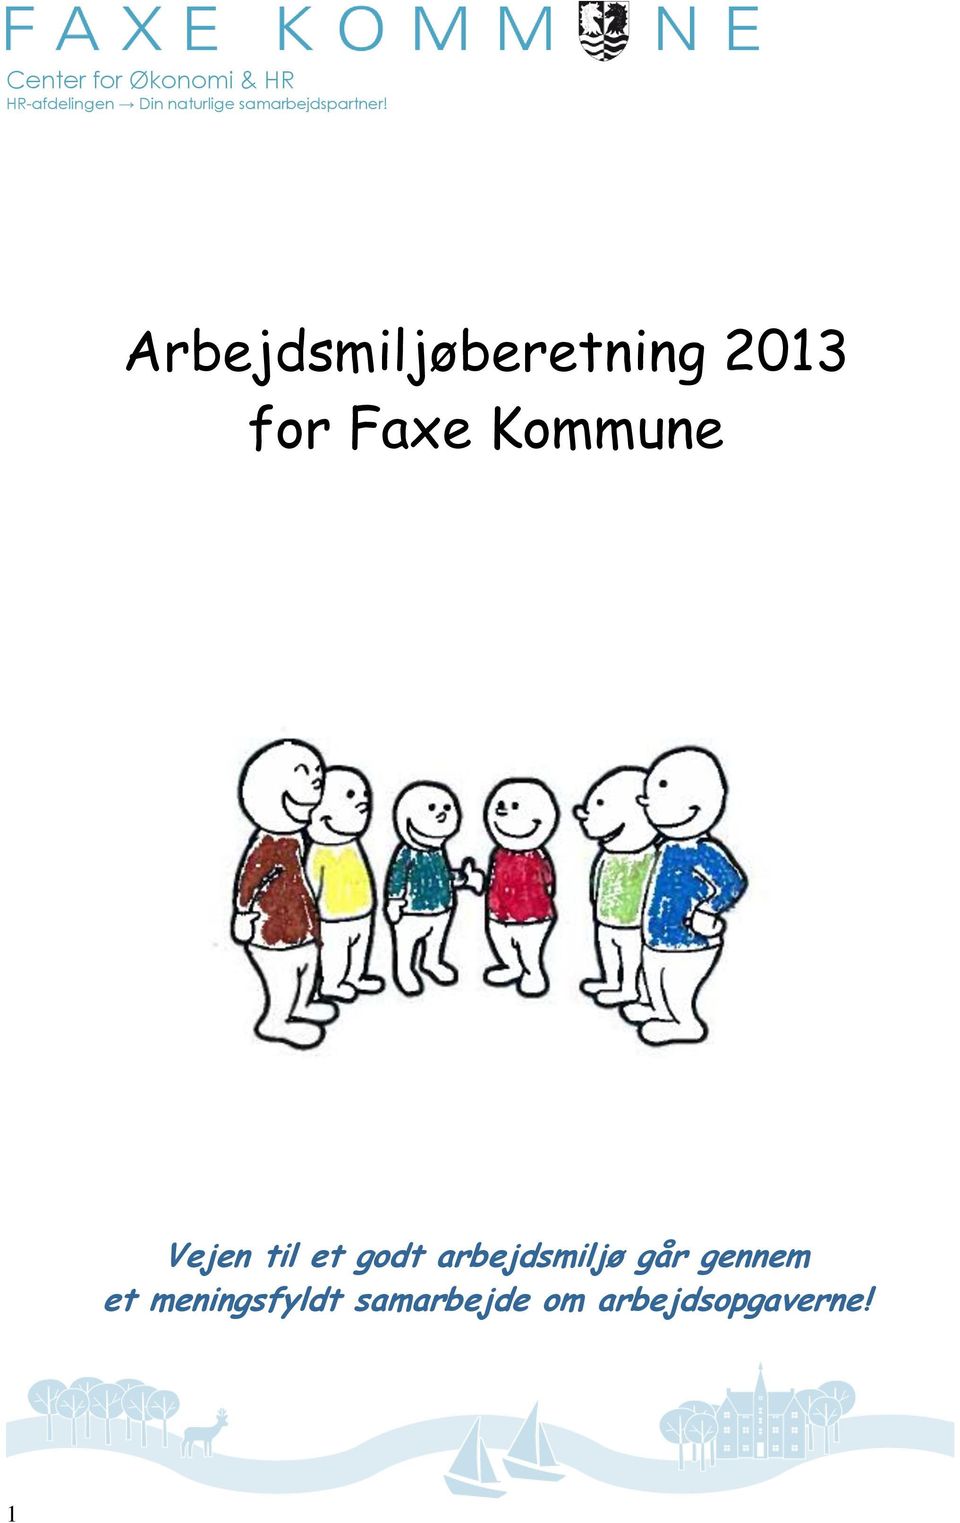 Arbejdsmiljøberetning 2013 for Faxe Kommune Vejen